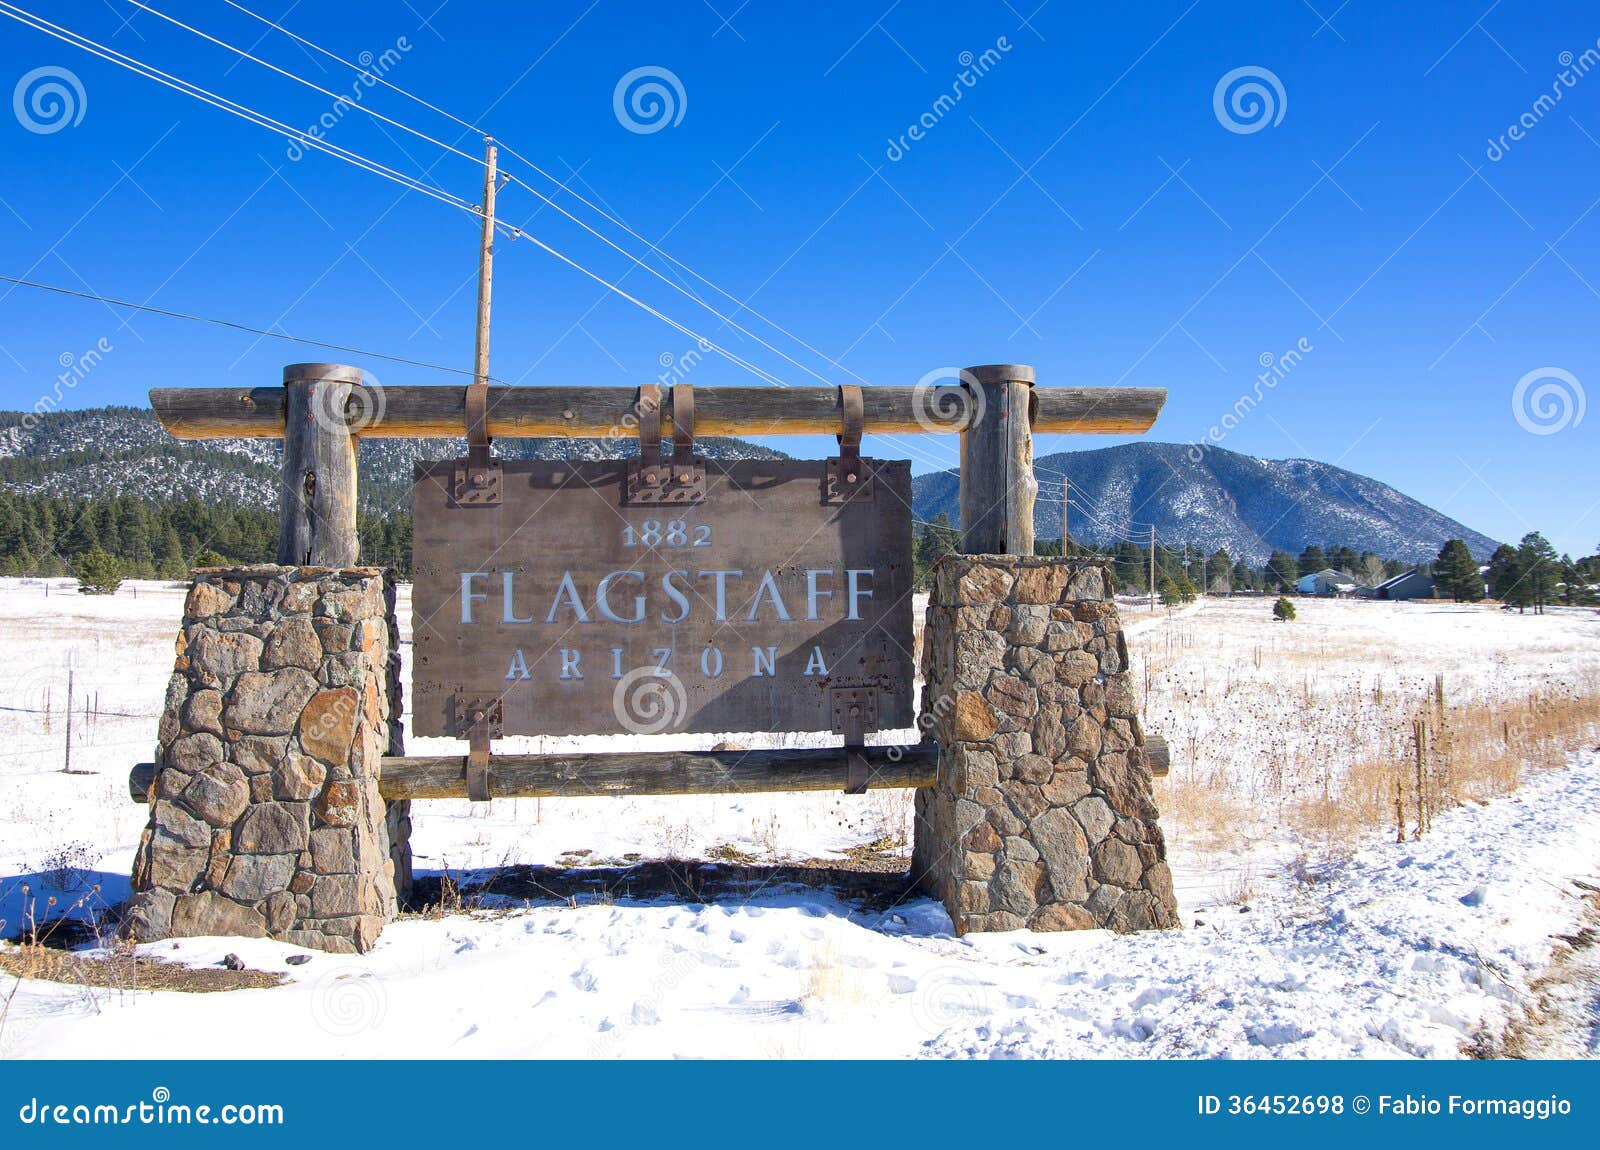 old sign of flagstaff,arizona